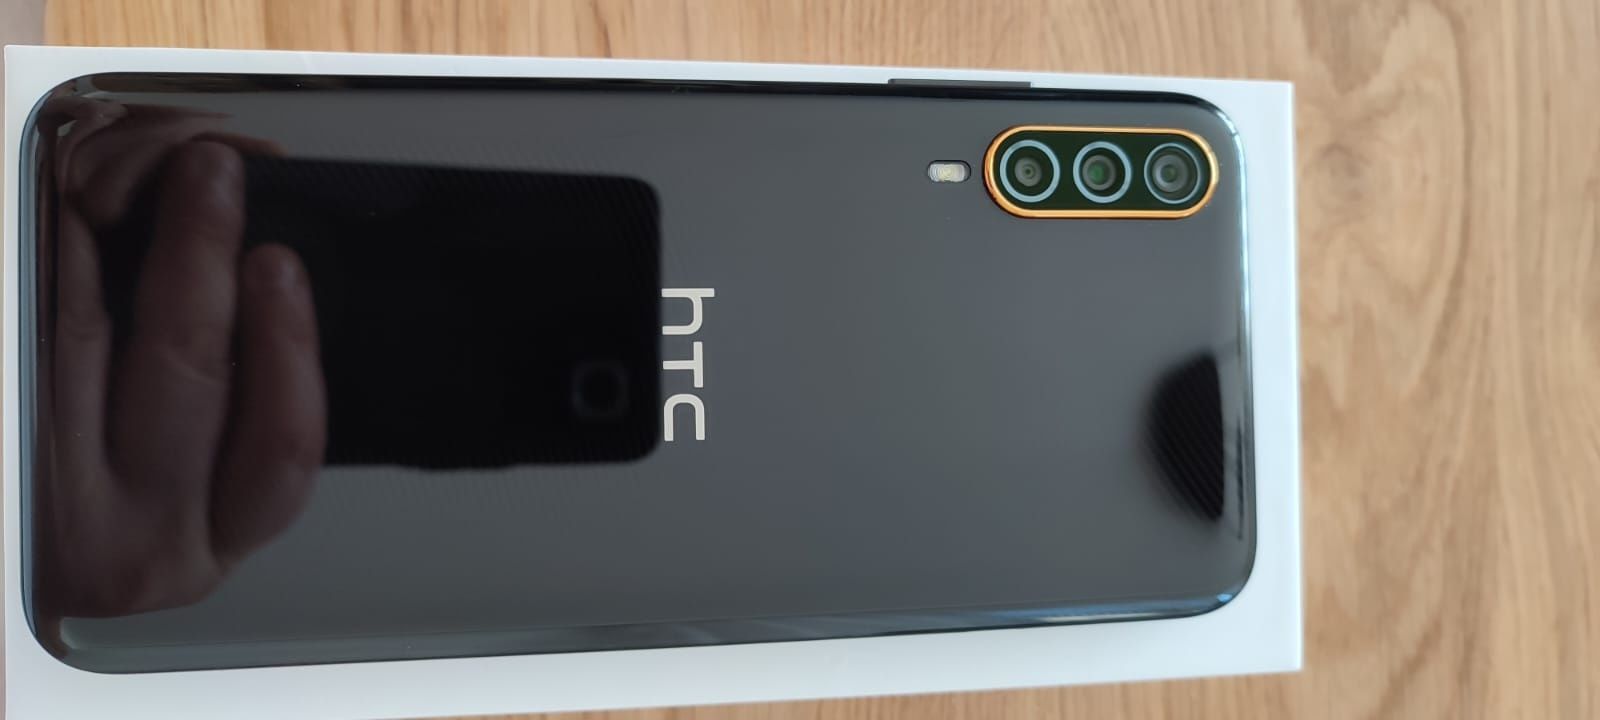 HTC Desire 22 Pro gwarancja jak nowy! Gratisy!